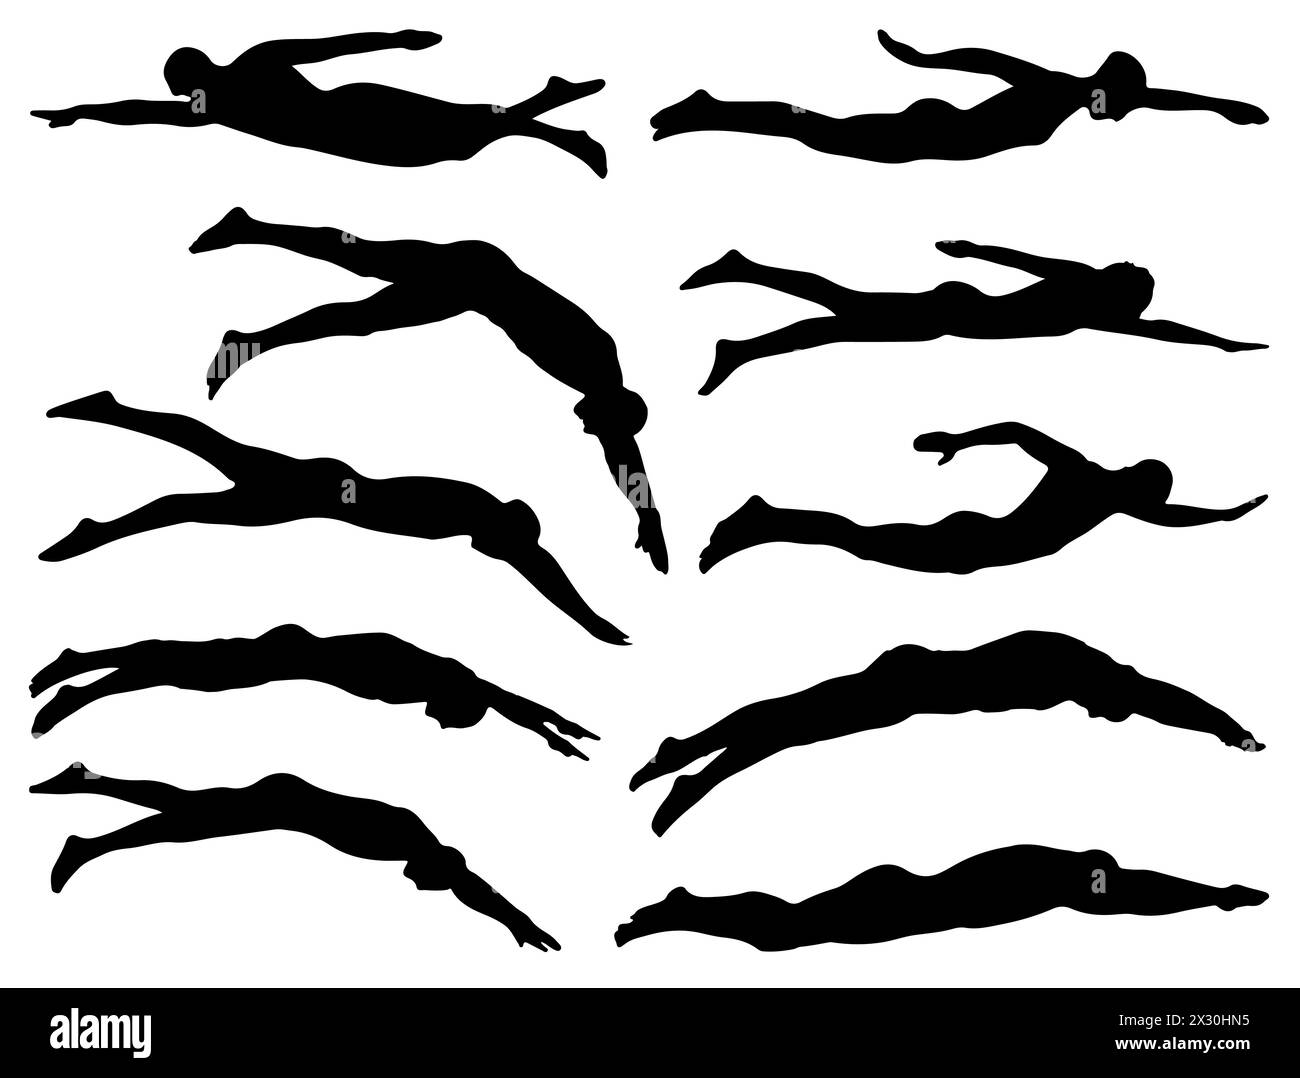 Swimmer silhouette vector art white background Stock Vector